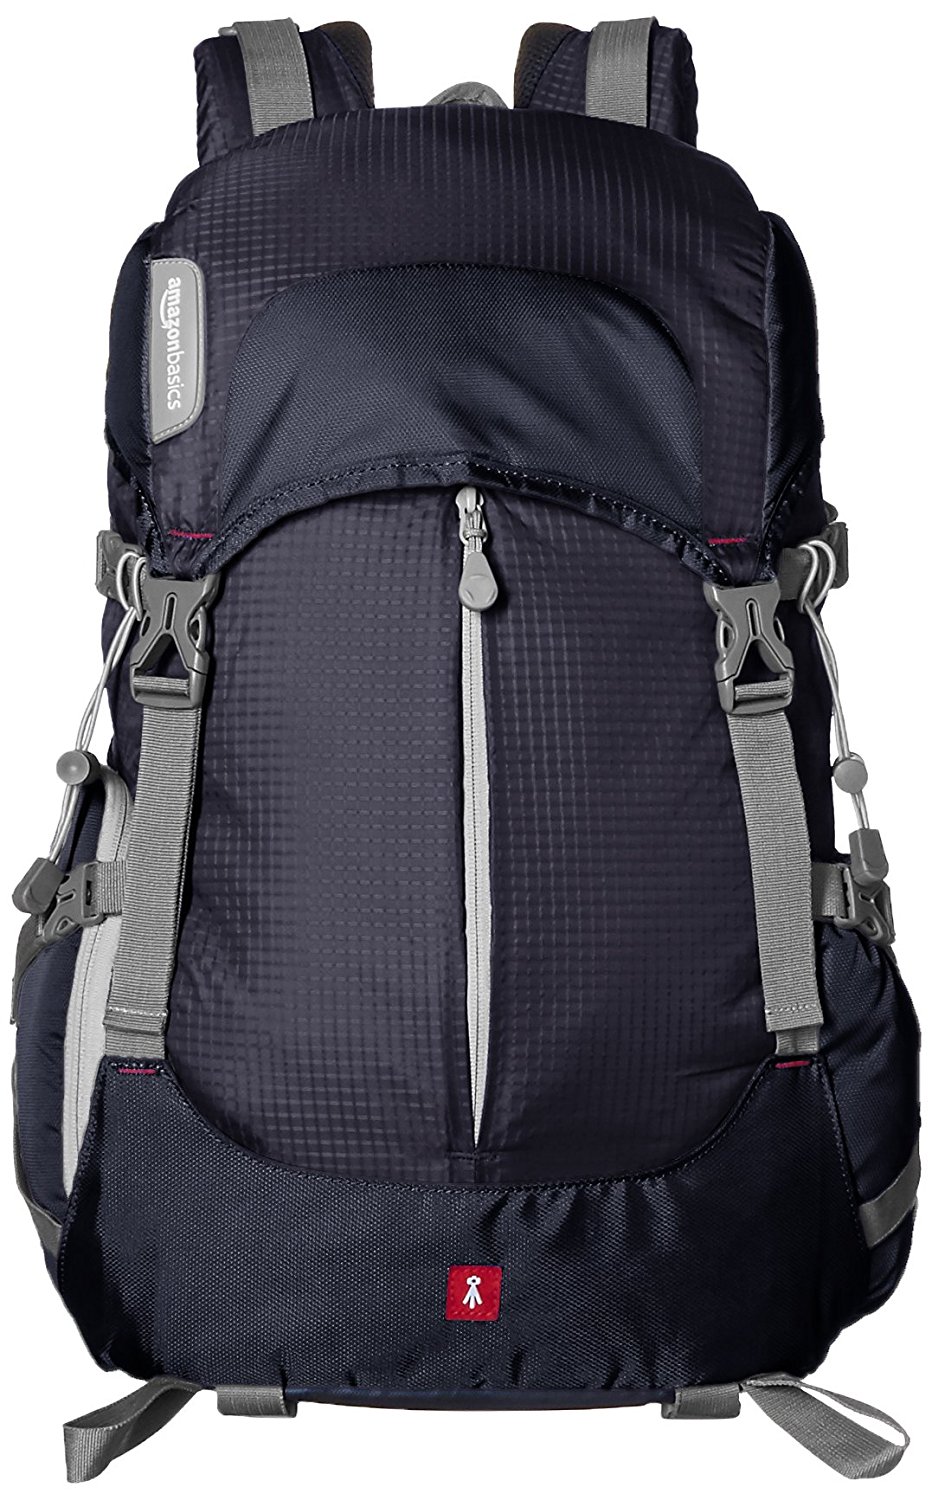 AmazonBasics Hiker DSLR Backpack, best dslr bag, best dslr camera bag, best dslr camera backpack